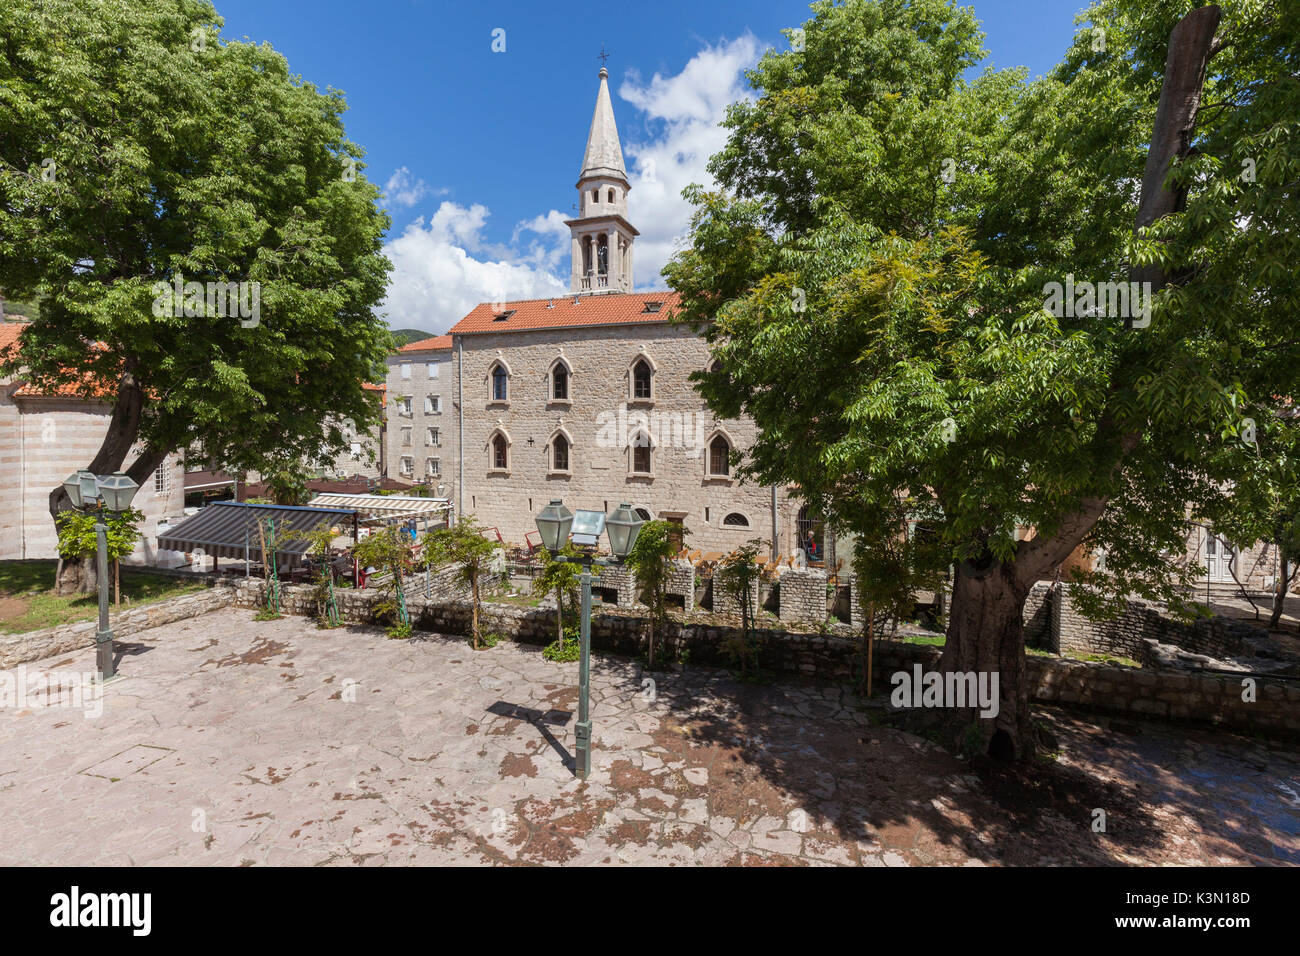 St. John Römisch-katholische Kirche (Sveti Ivana). Diese Kirche rekonstruiert bei zahlreichen Gelegenheiten kennzeichnet sich durch einen beeindruckenden Glockenturm und einem großen bischöflichen Residenz dating beide von 1867. Budva, Montenegro Stockfoto